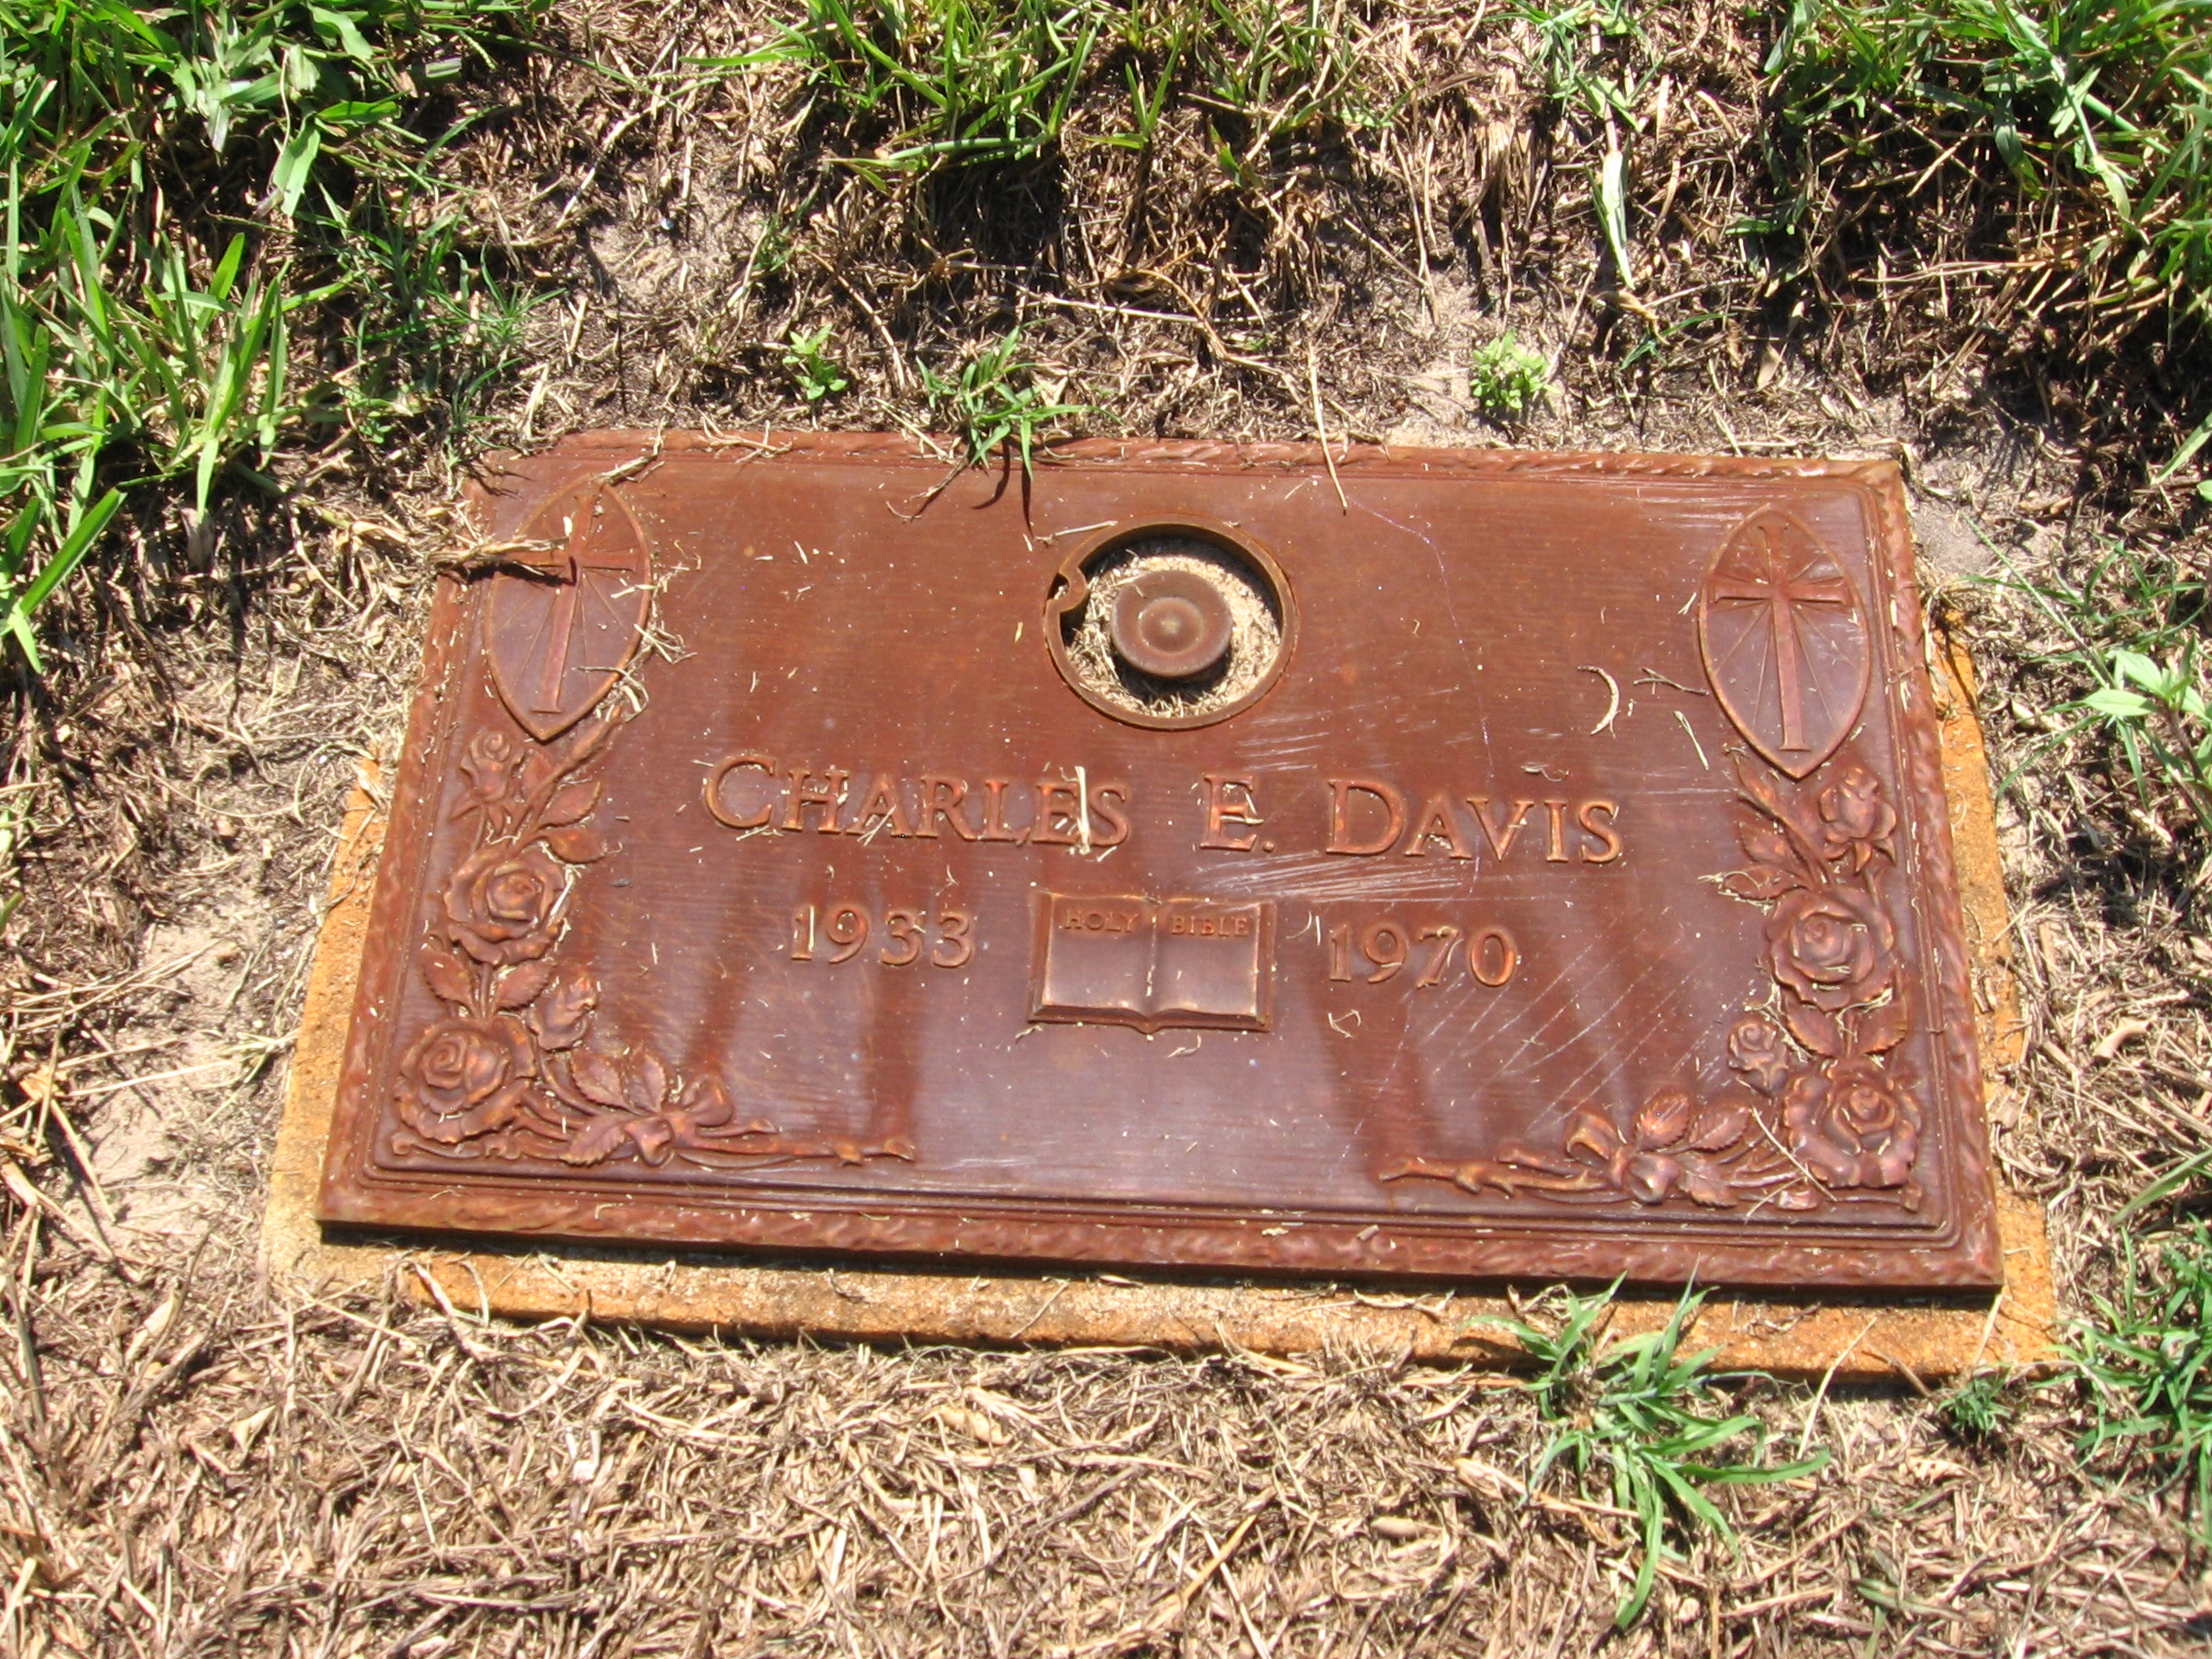 Charles E Davis